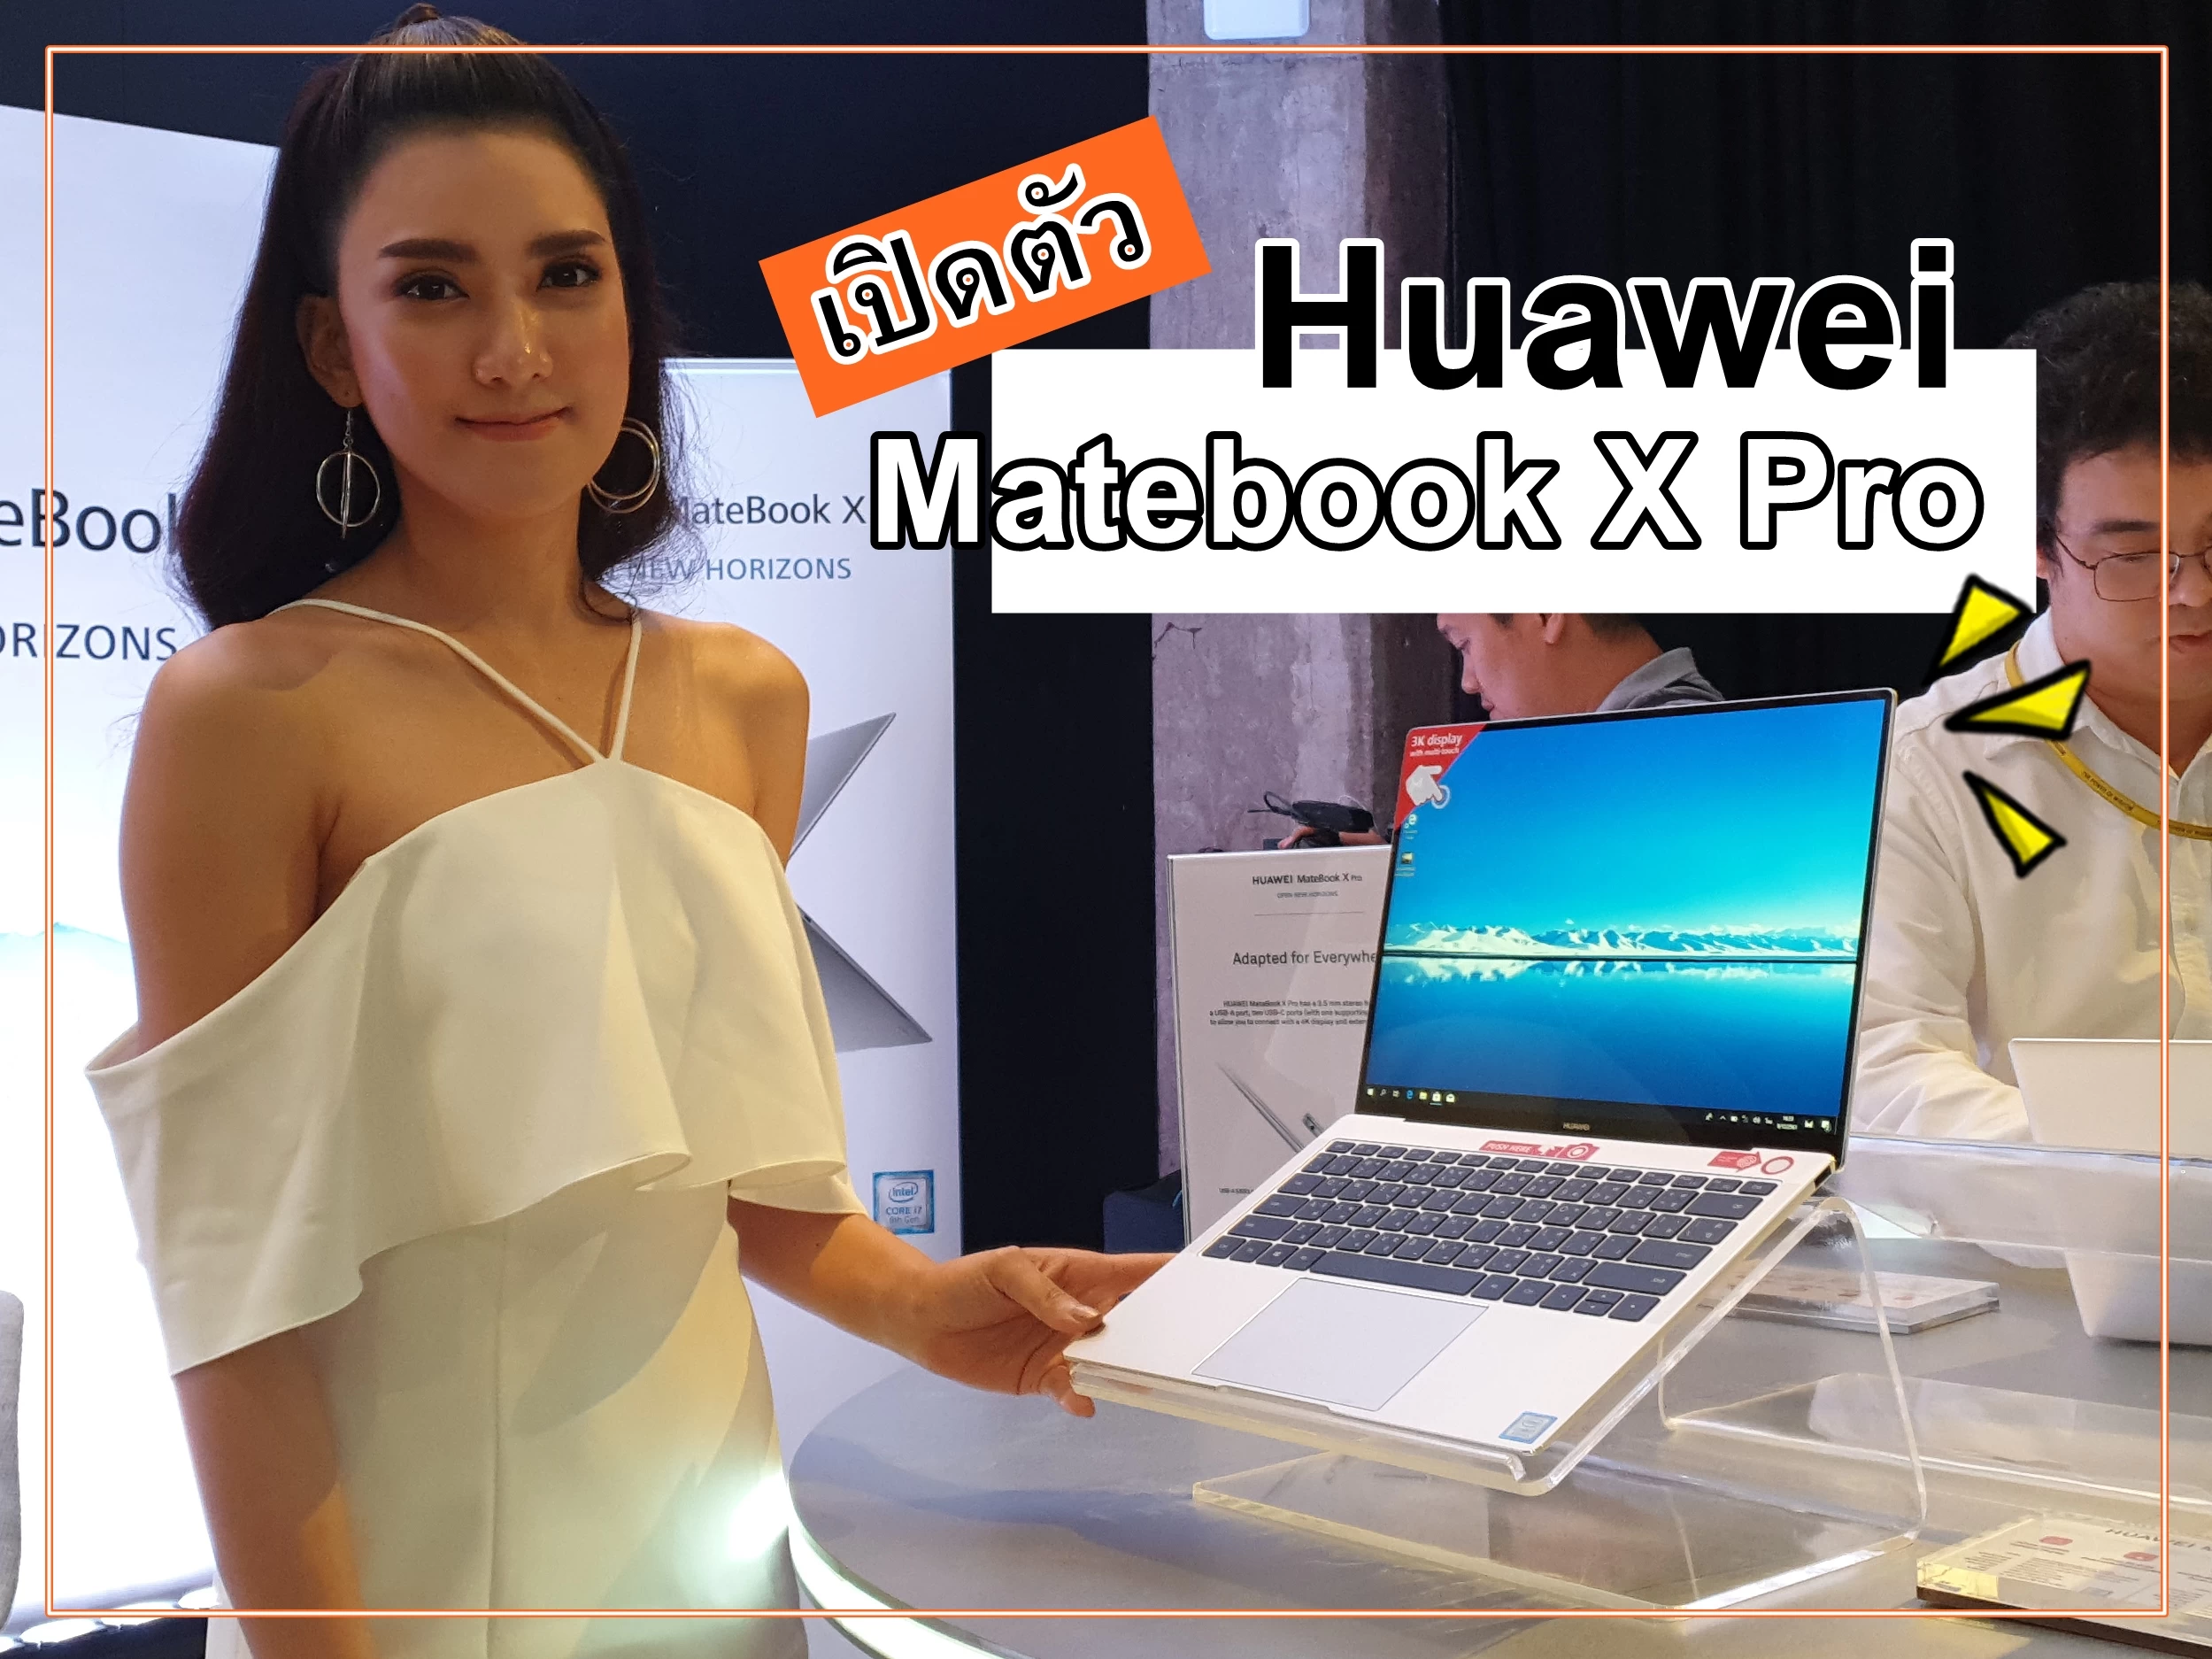 20181217 183815 | Huawei | เปิดตัวแล้ว HUAWEI Matebook X Pro โน้ตบุ๊กรุ่นล่าสุดดีไซน์หรูหรา บางเฉียบ สำหรับคนทำงานรุ่นใหม่ไลฟ์สไตล์คูล